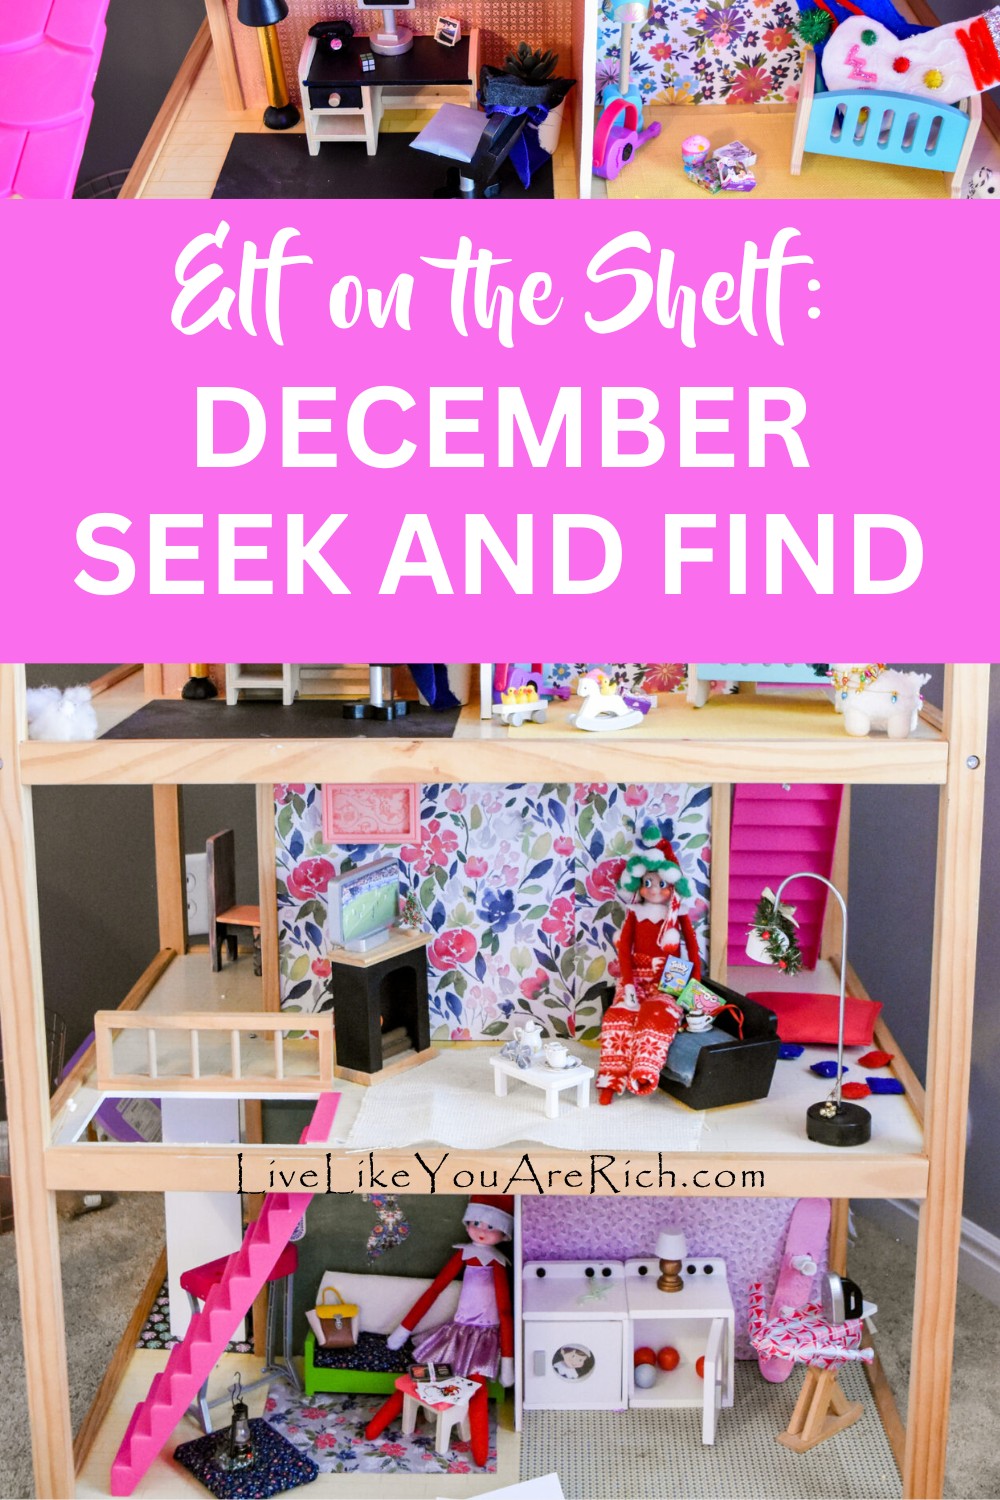 Elf on the Shelf: December Seek and Find